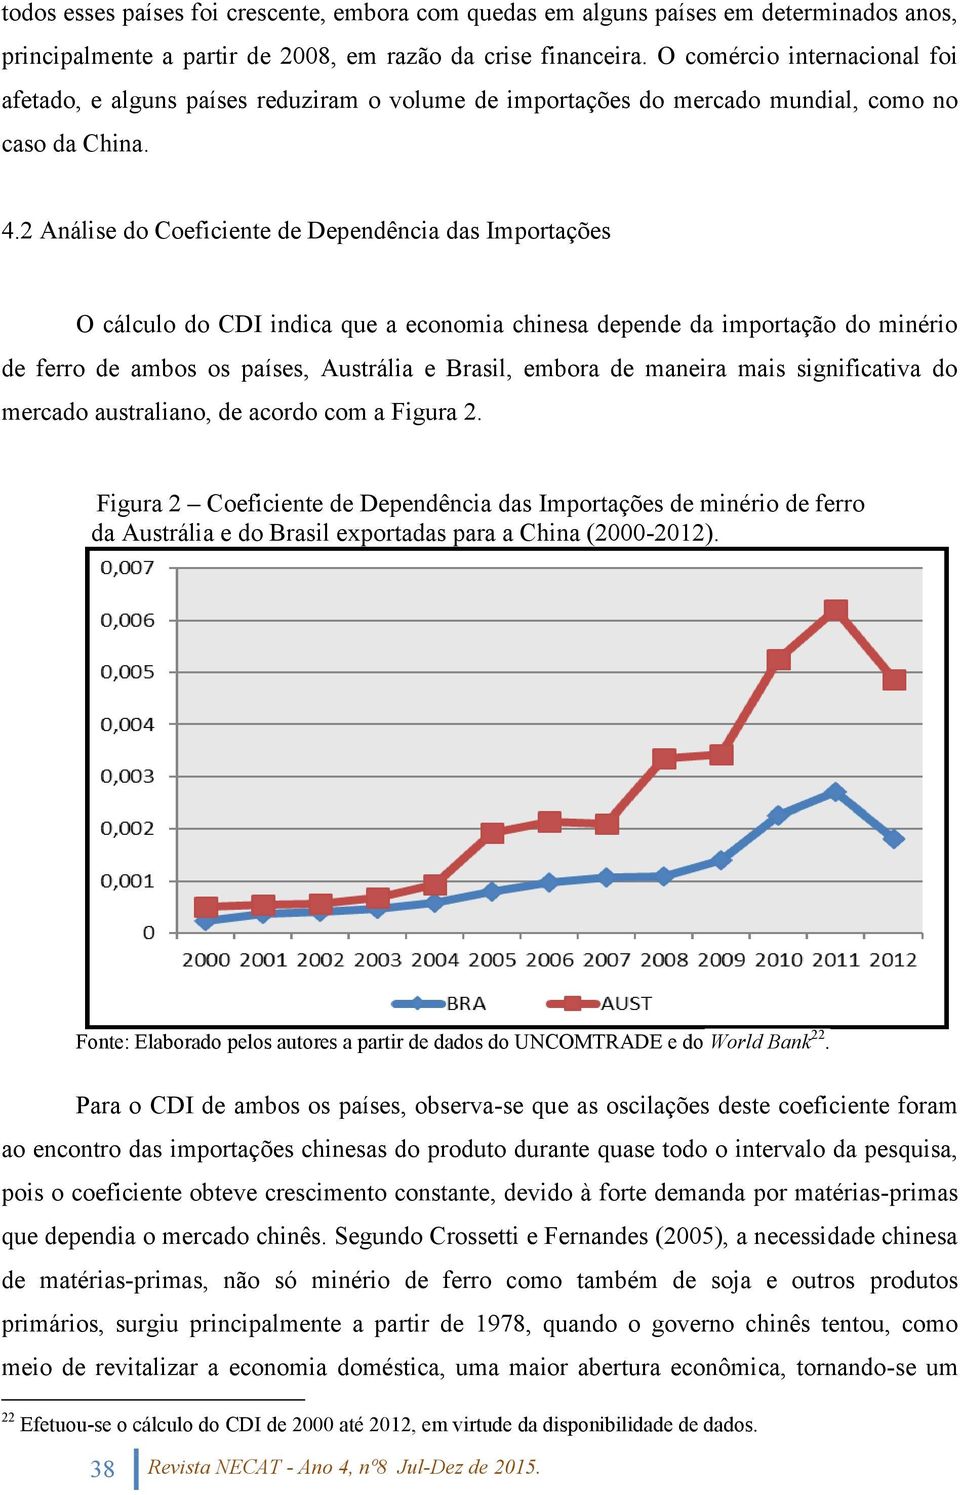 2 Análise do Coeficiente de Dependência das Importações O cálculo do CDI indica que a economia chinesa depende da importação do minério de ferro de ambos os países, Austrália e Brasil, embora de